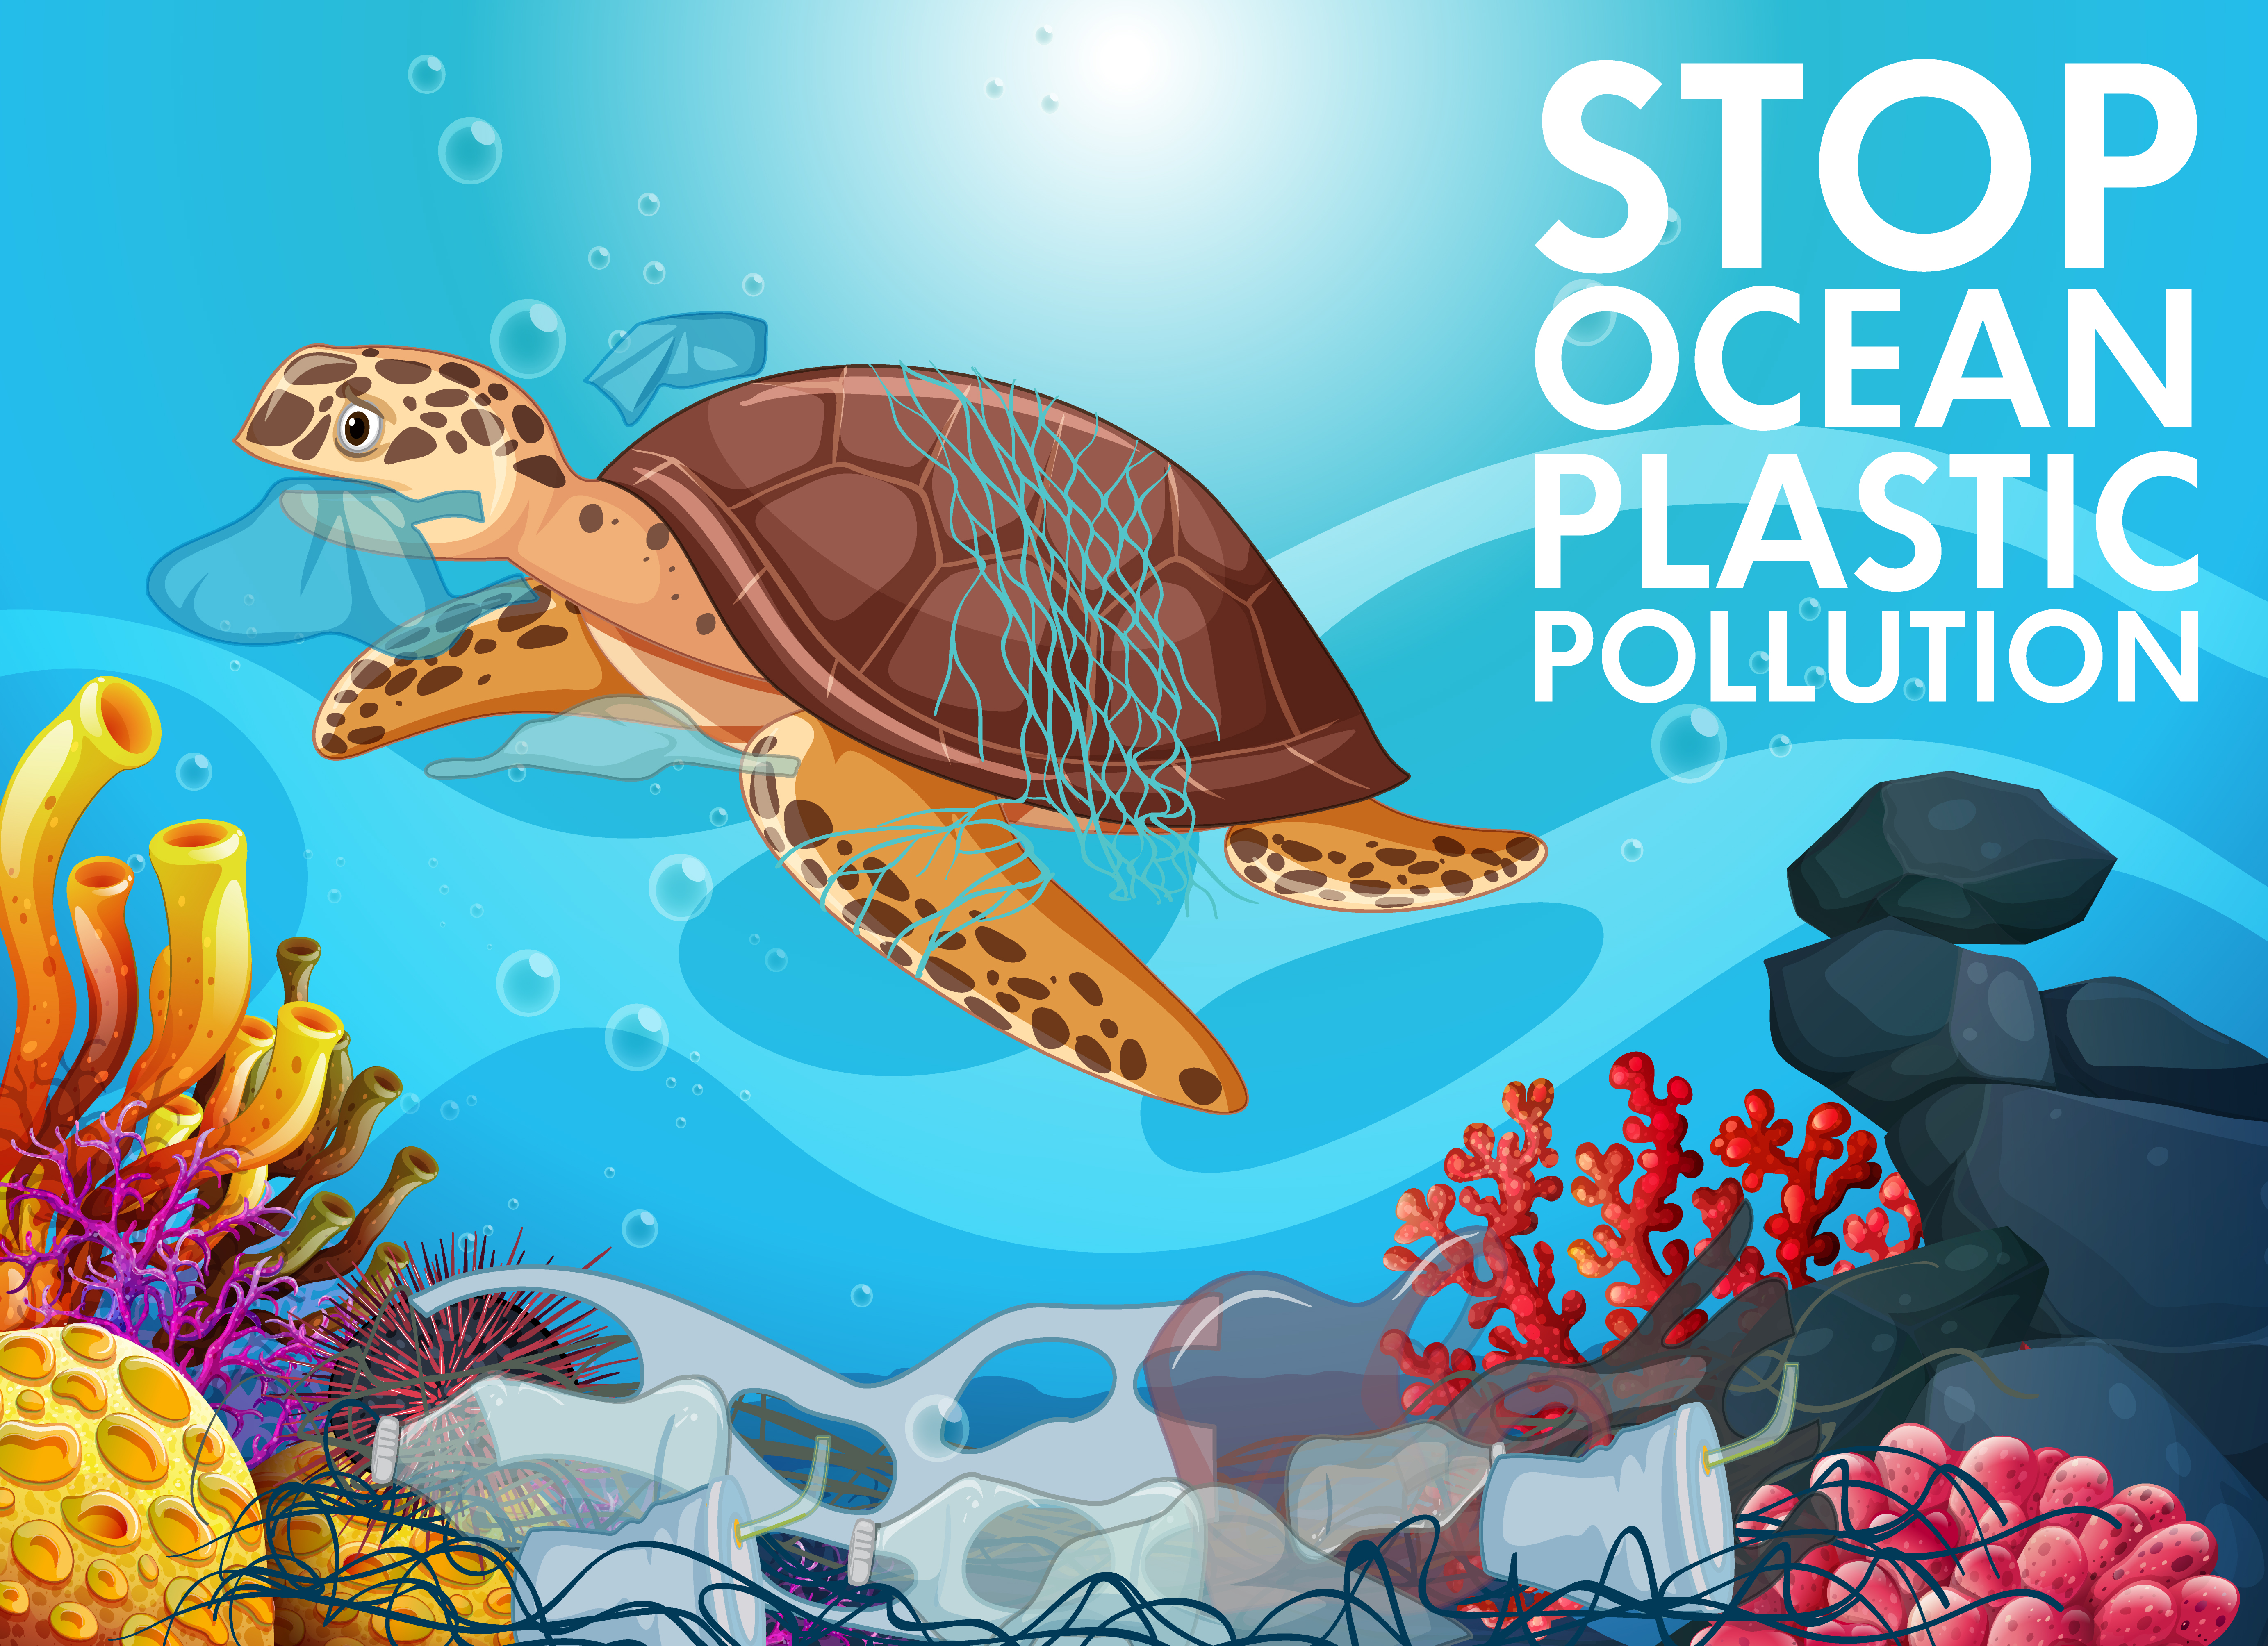 Stop Ocean Plastic Pollution 697384 Vector Art at Vecteezy